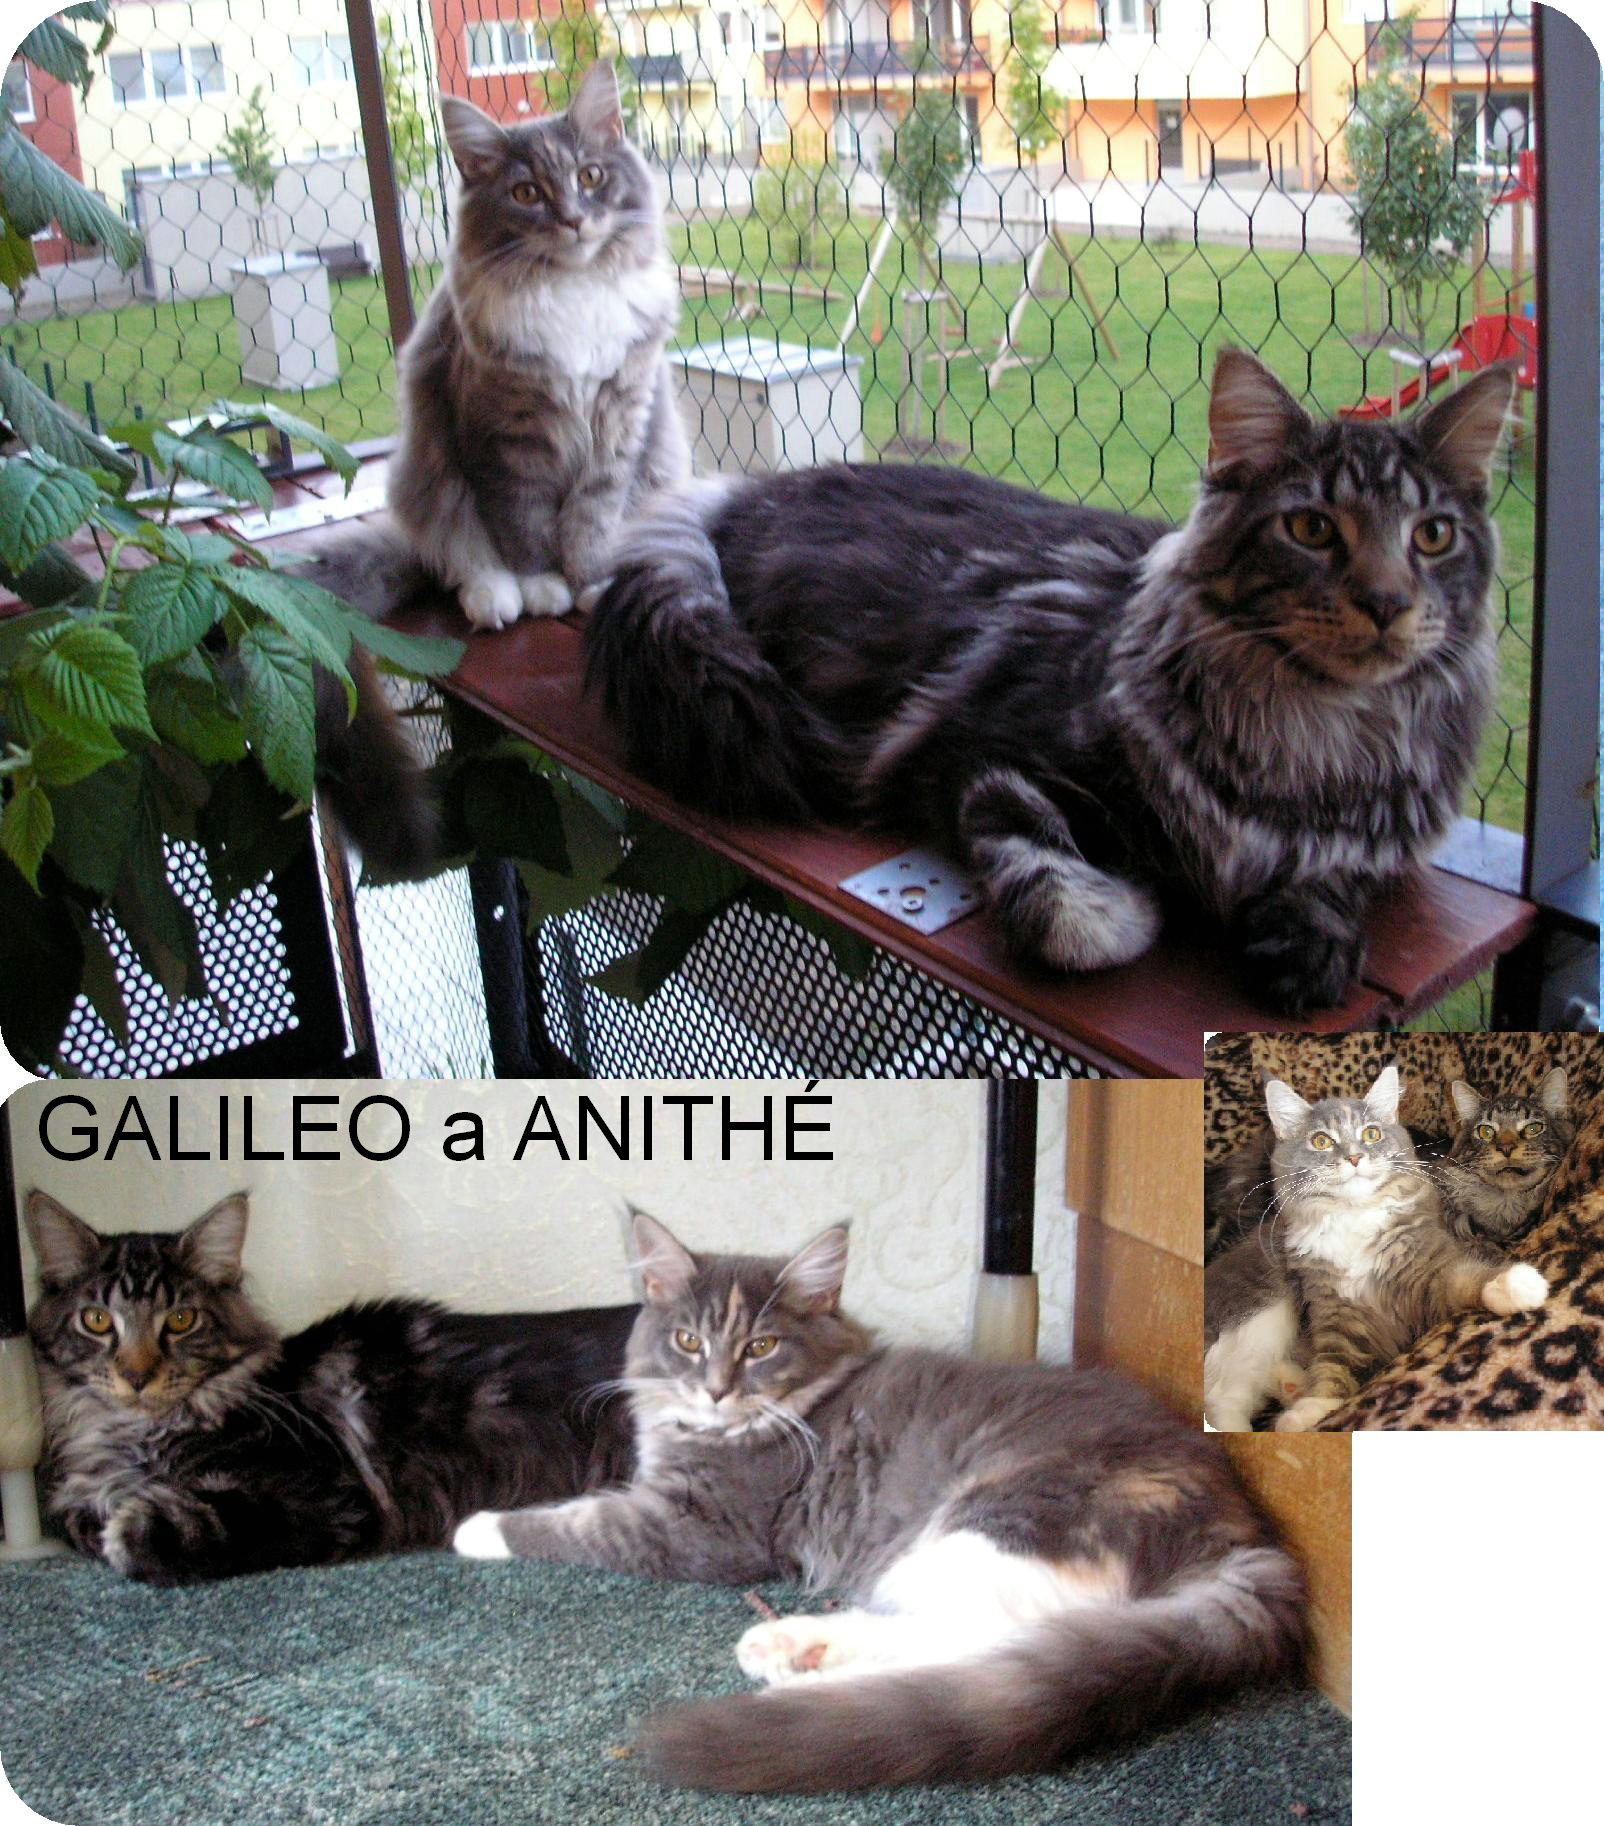 10-GALILEO a ANITHÉ.JPG